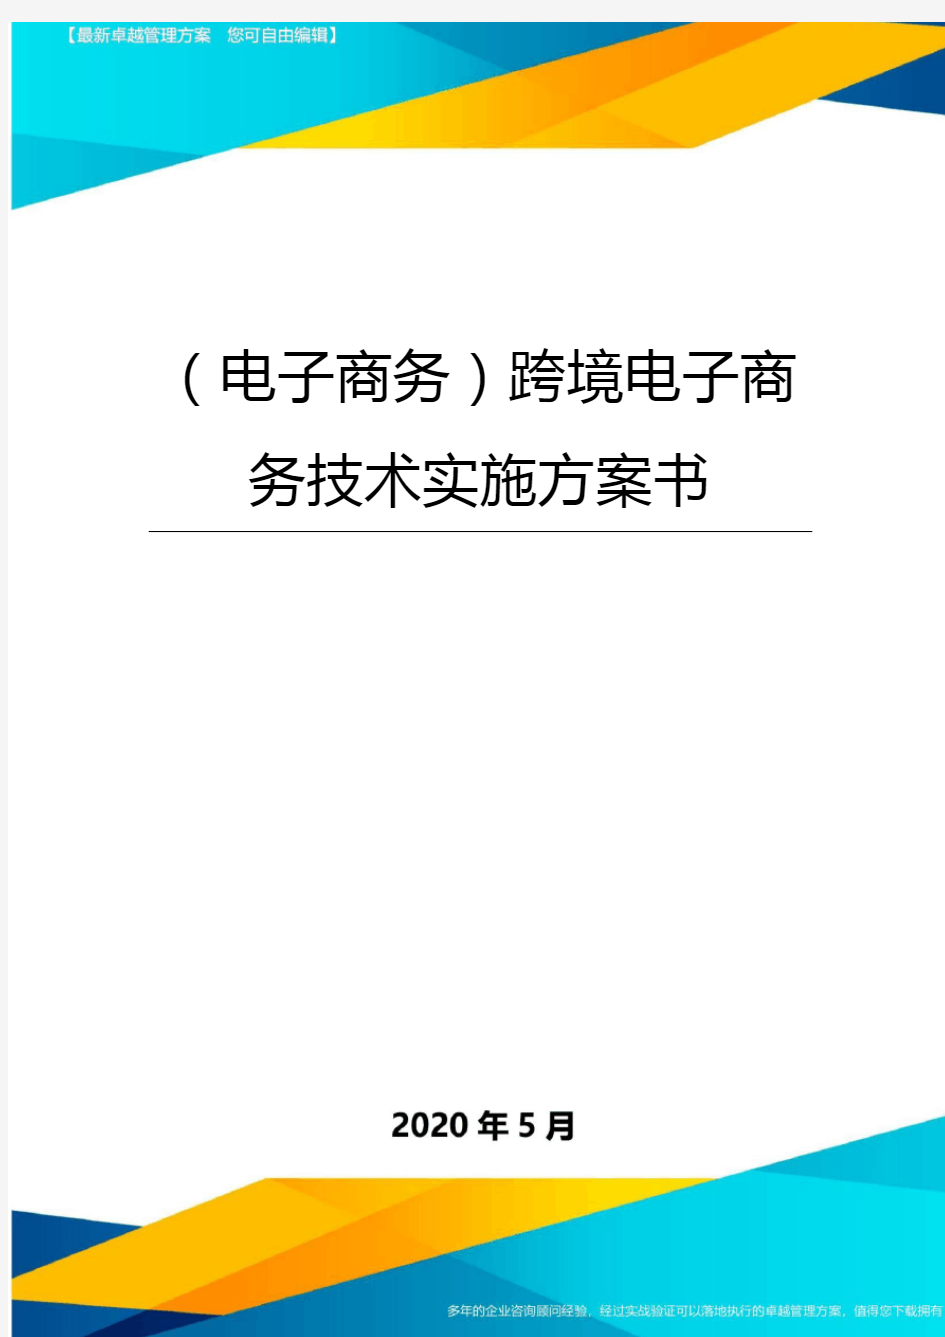 【电子商务】跨境电子商务技术实施方案书